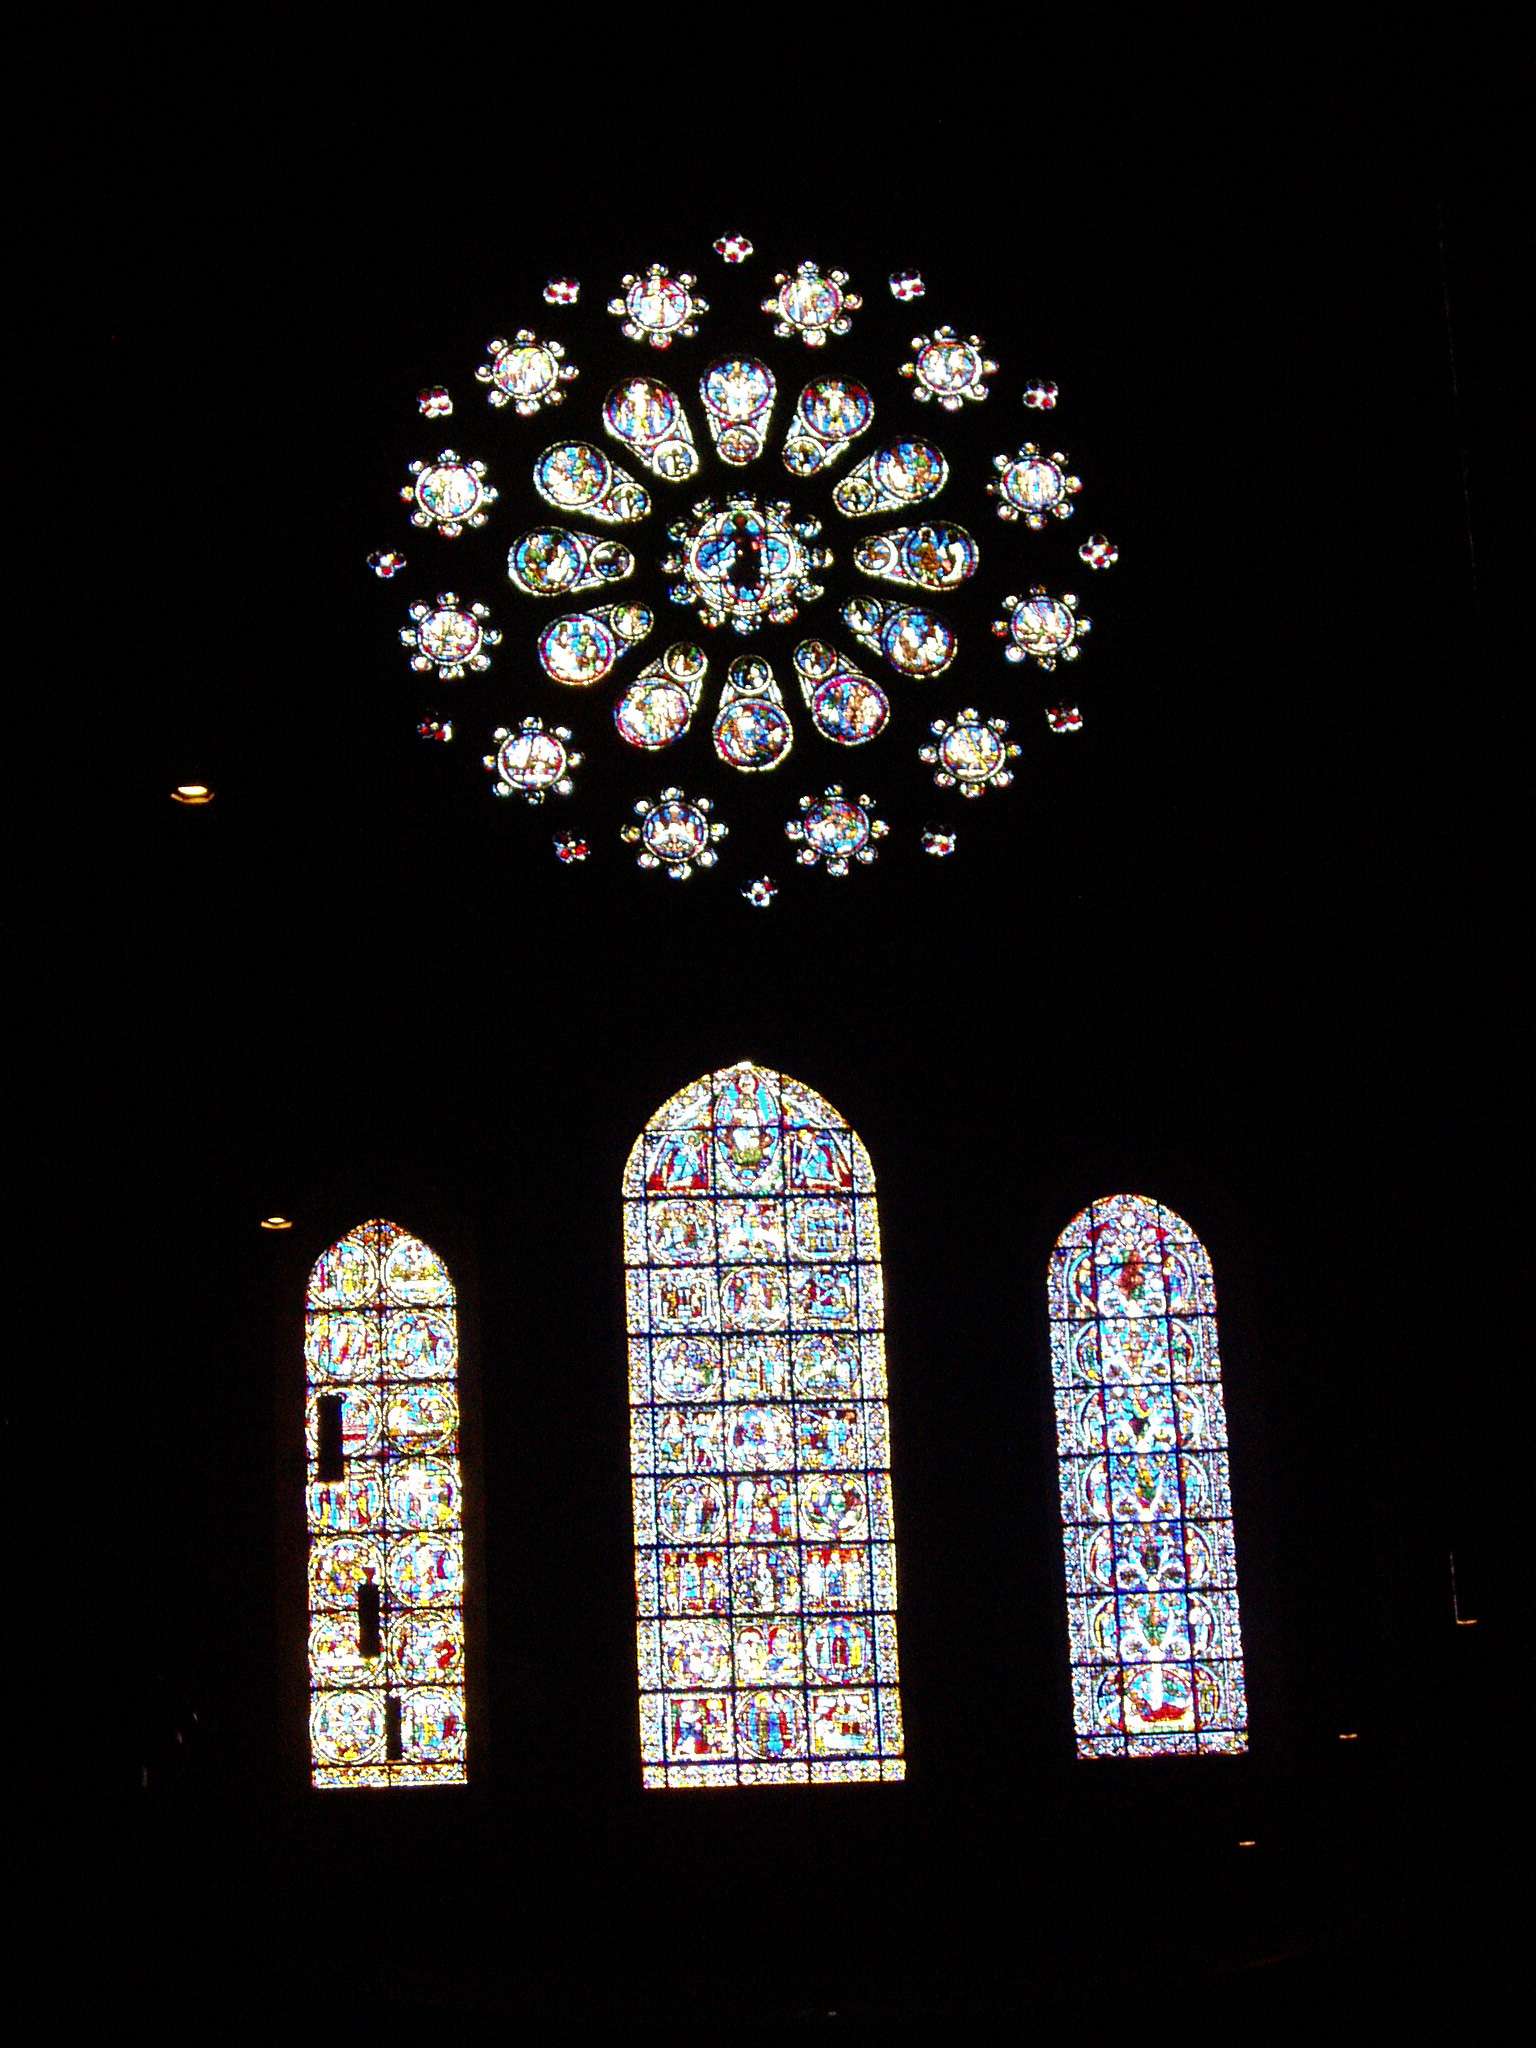 Arquitectura de la catedral de Chartres - Chartres: Arte, espiritualidad y esoterismo. (7)